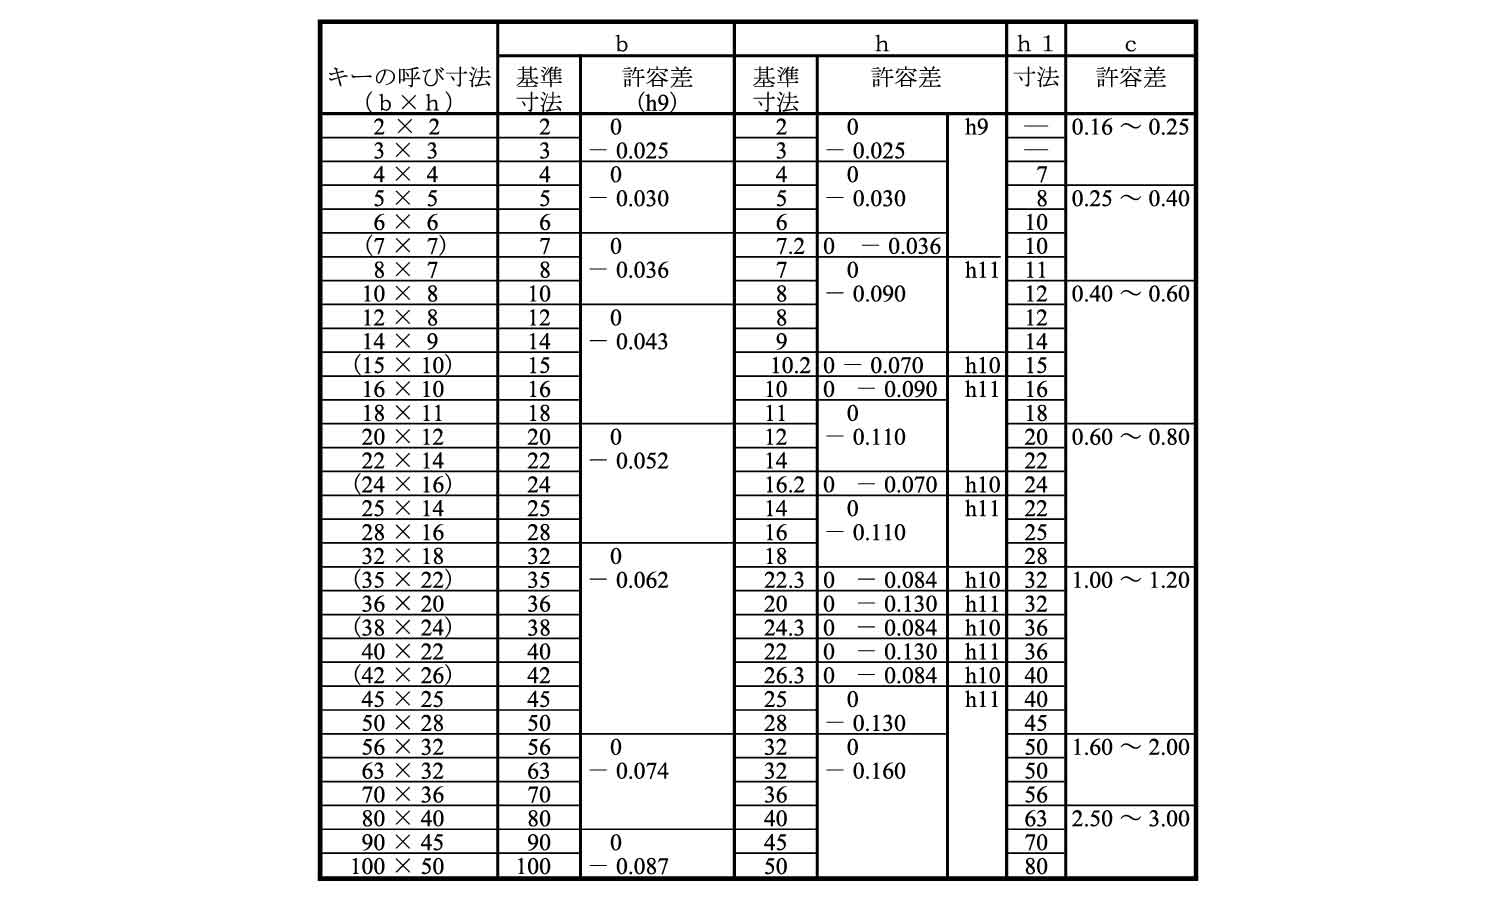 Ｓ４５Ｃ カタマルキー（ヒメノ 材質(Ｓ４５Ｃ) 規格(3X3X25) 入数(1000) 通販